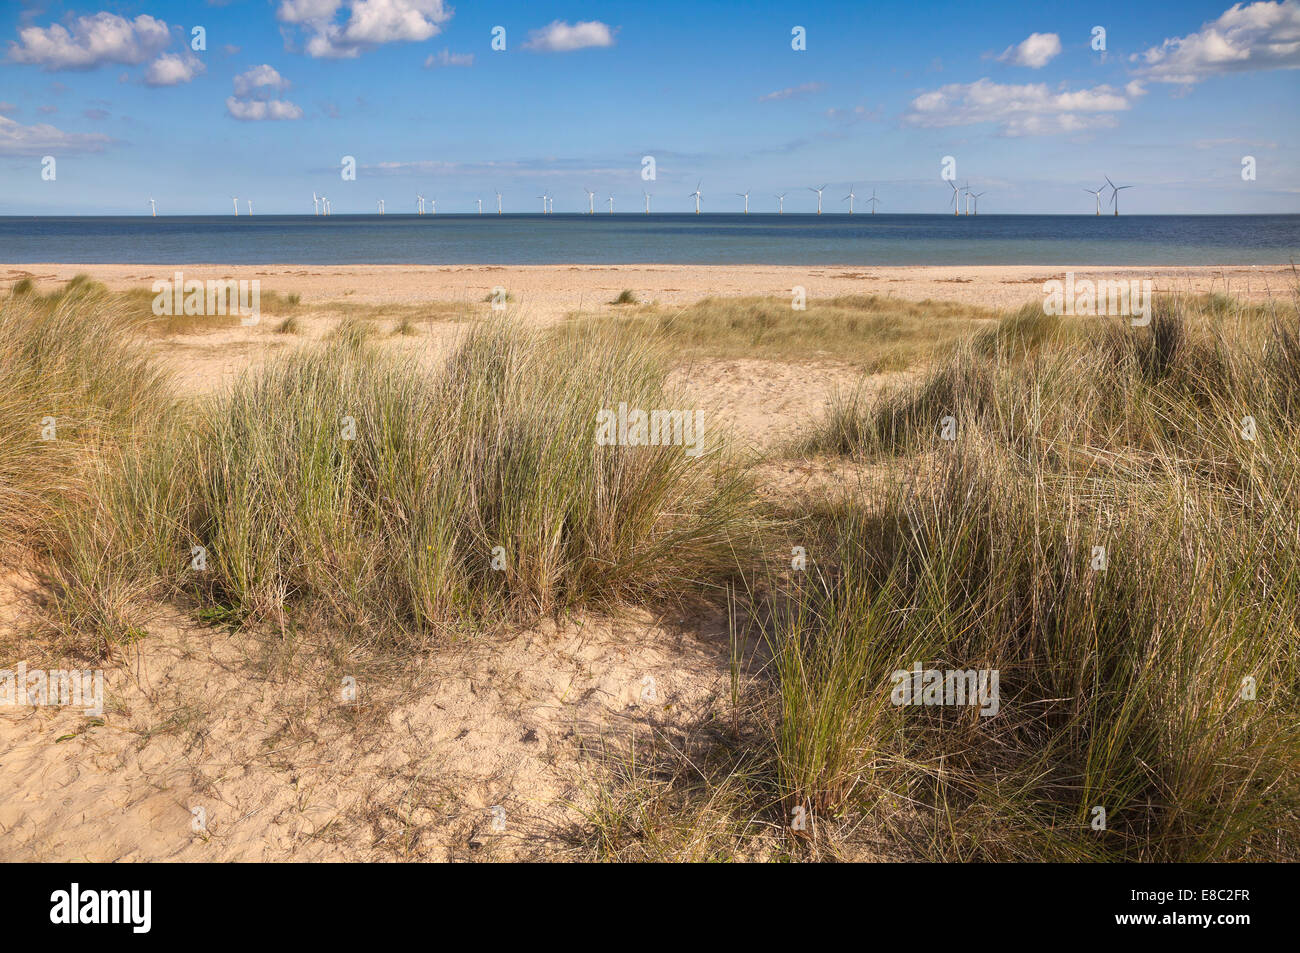 Windpark Scroby Sands am Horizont der North Norfolk Ostküste, UK. Sanddünen mit Dünengebieten Grass im Vordergrund Stockfoto